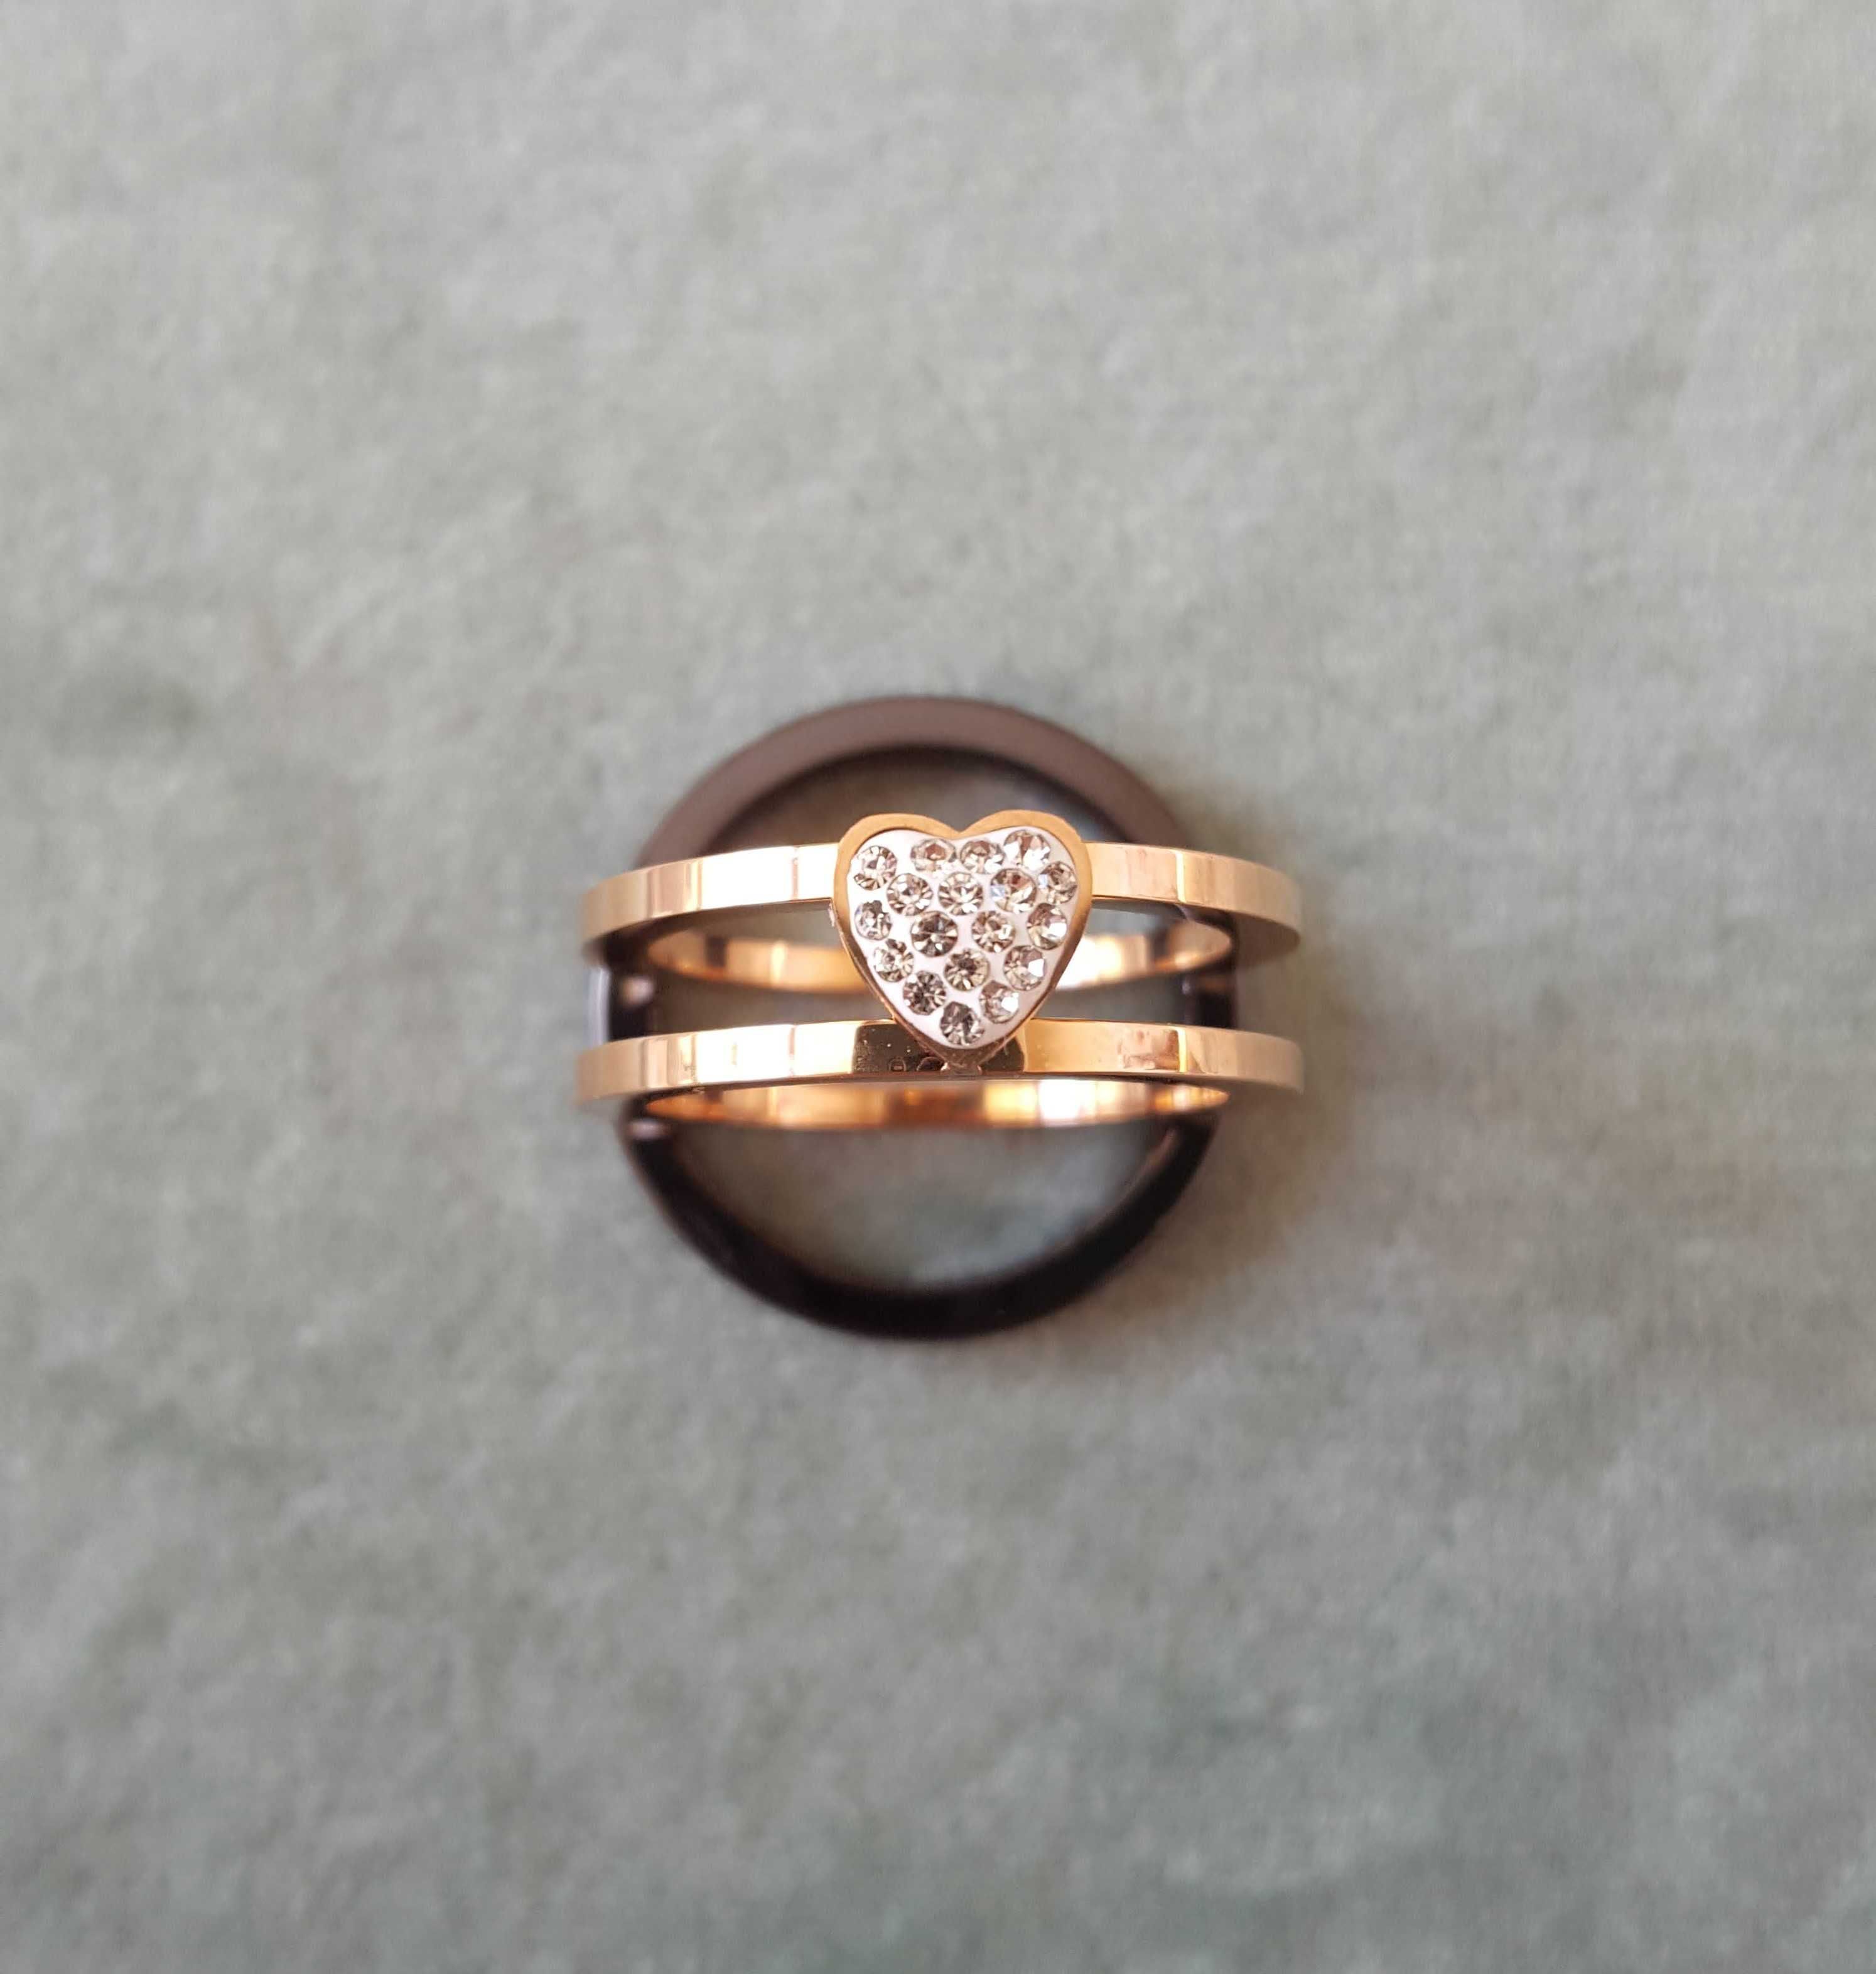 Nowy pierścionek komplet zestaw dwa pierścionki obrączka różowe złoto